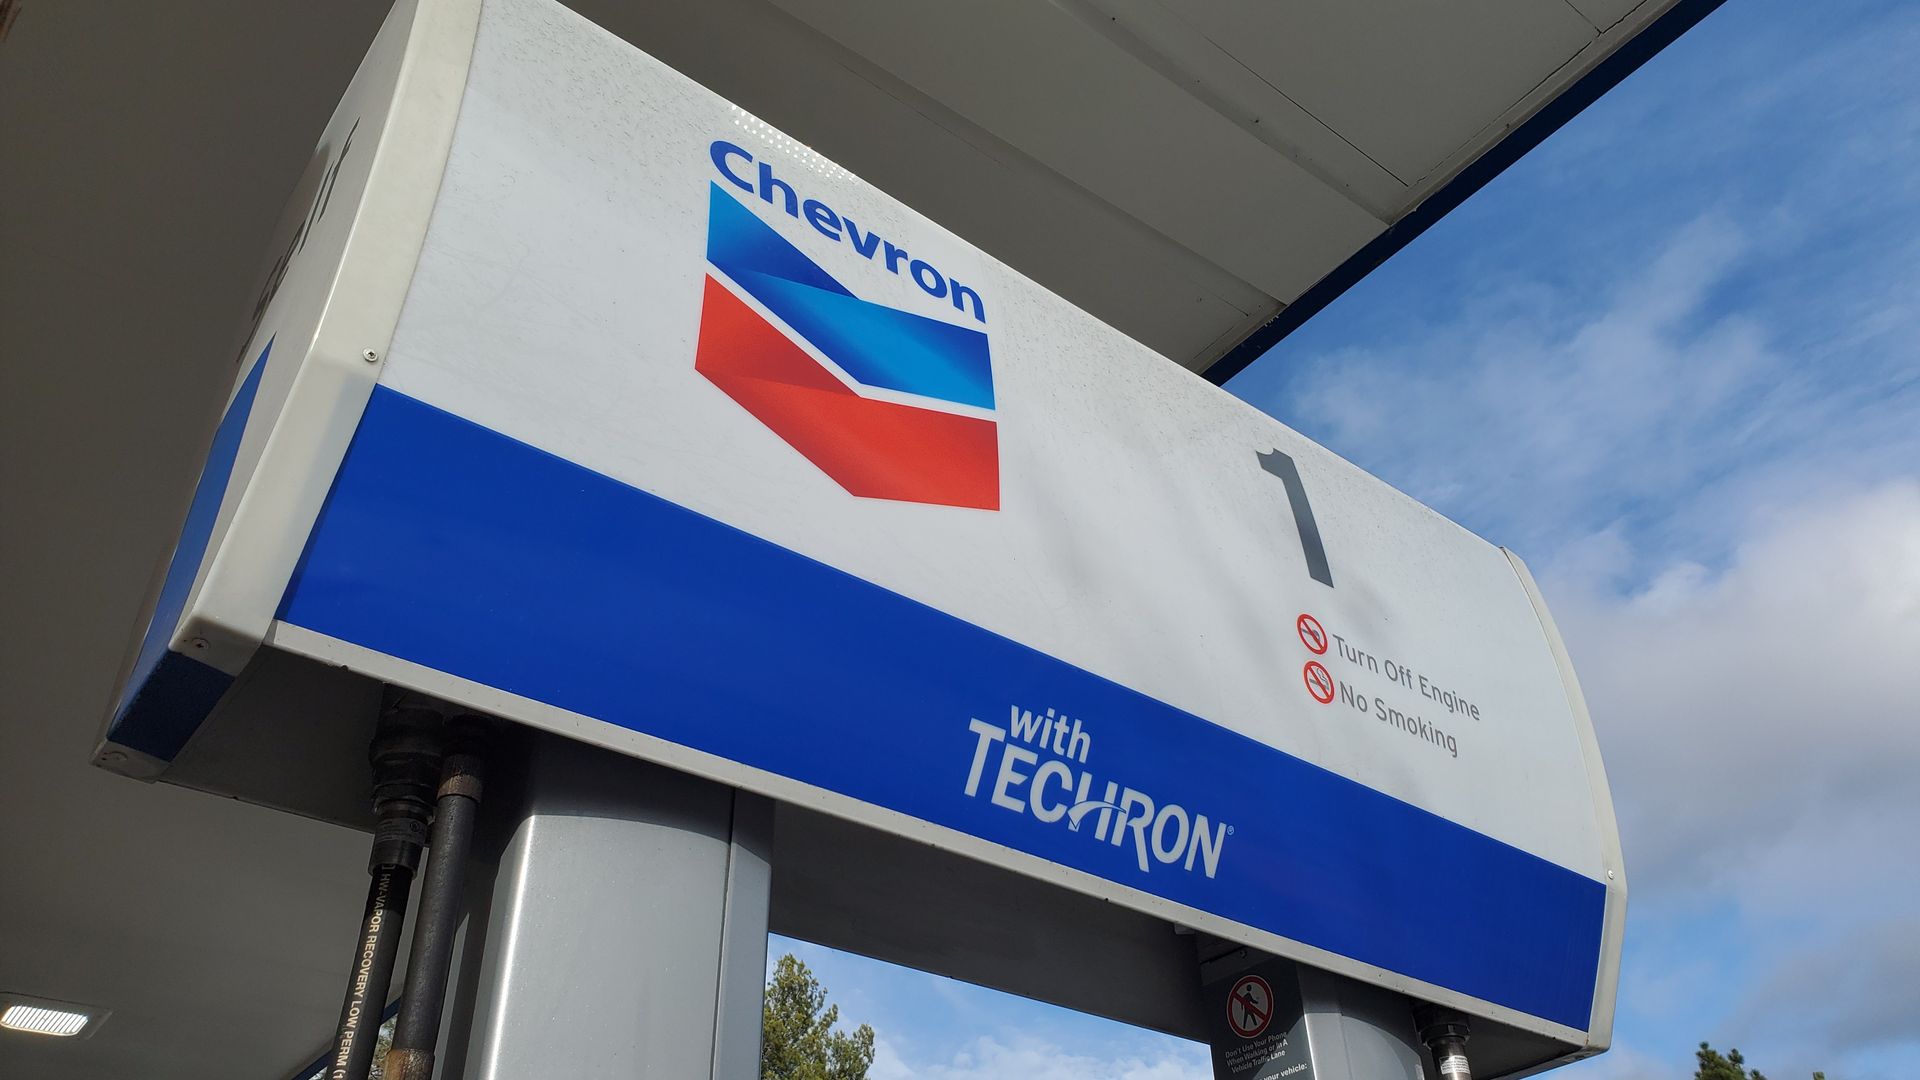 Chevron gas statin sign